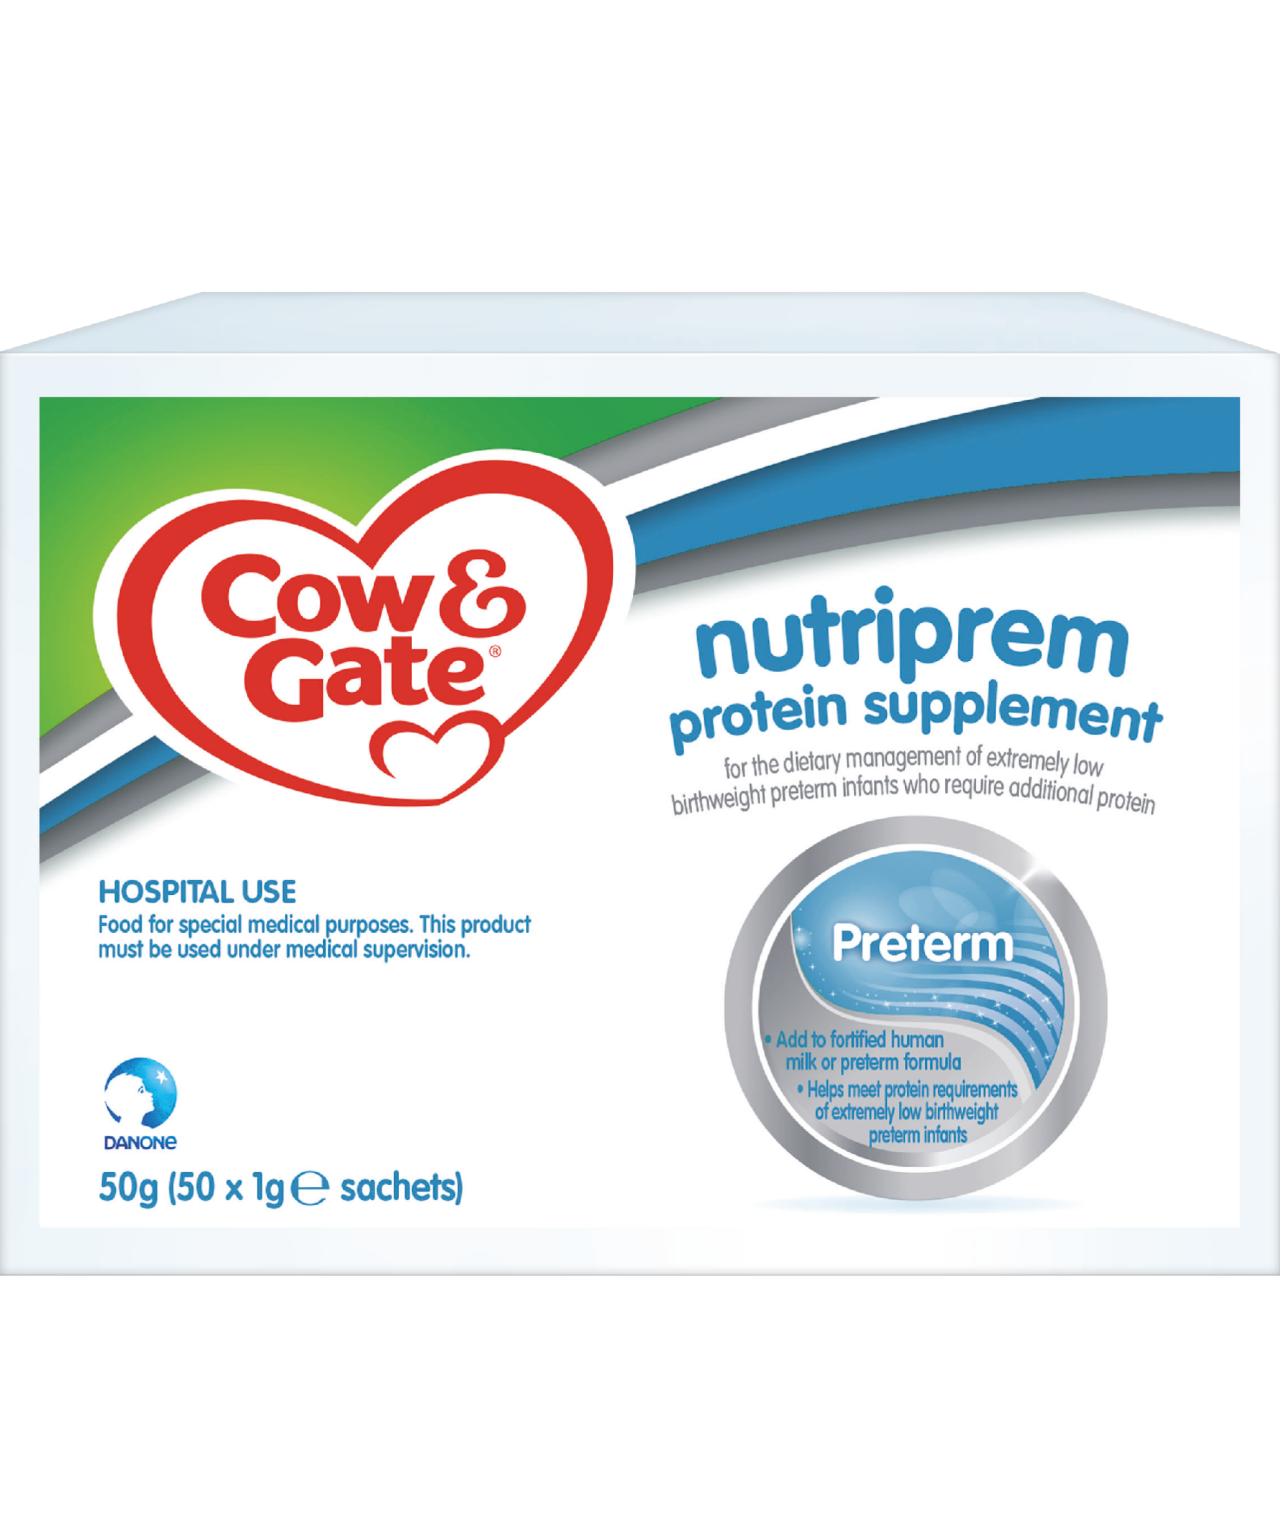 Cow & Gate nutriprem Protein Supplement